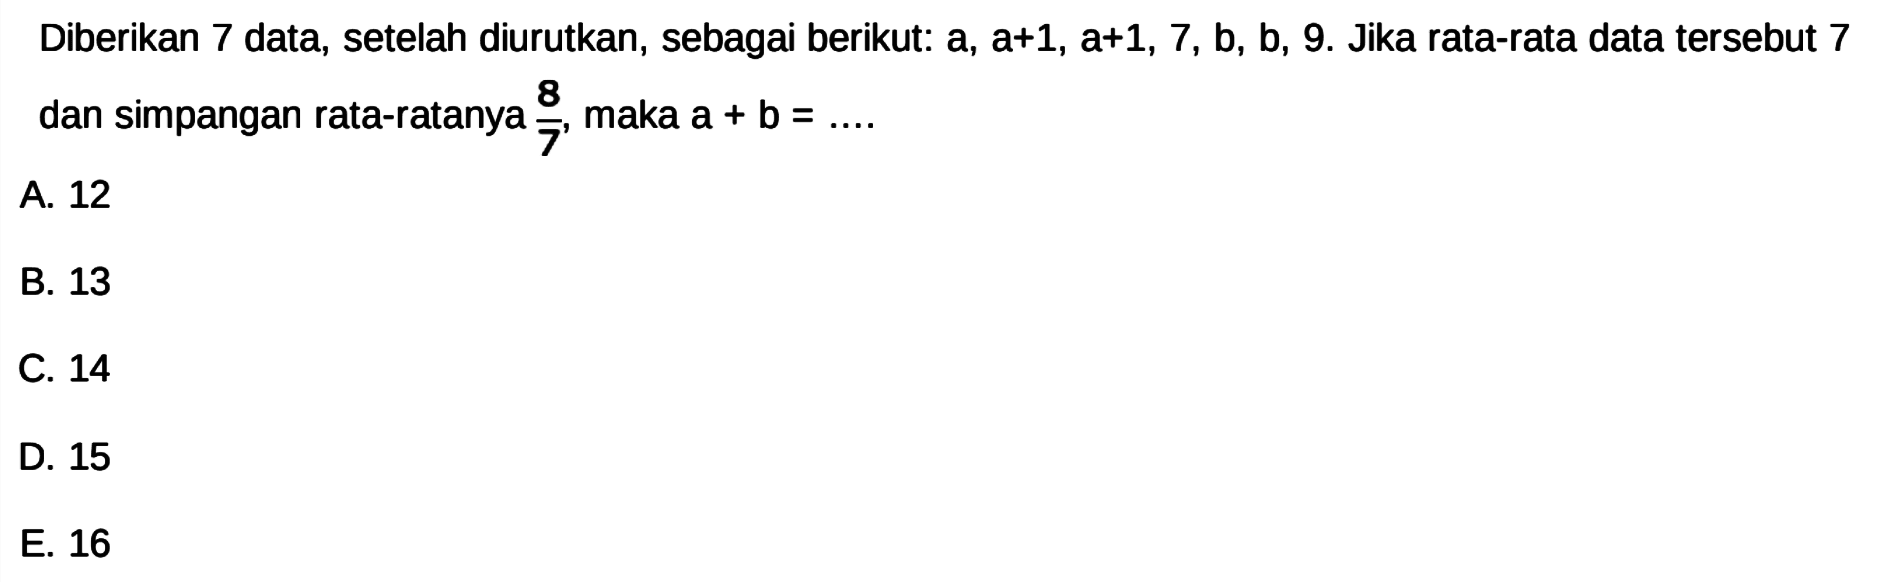 Diberikan 7 data, setelah diurutkan , sebagai berikut: a, a+1, a+1, 7, b, b, 9. Jika rata-rata data tersebut 7 dan simpangan rata-ratanya 8/7 maka a + b =